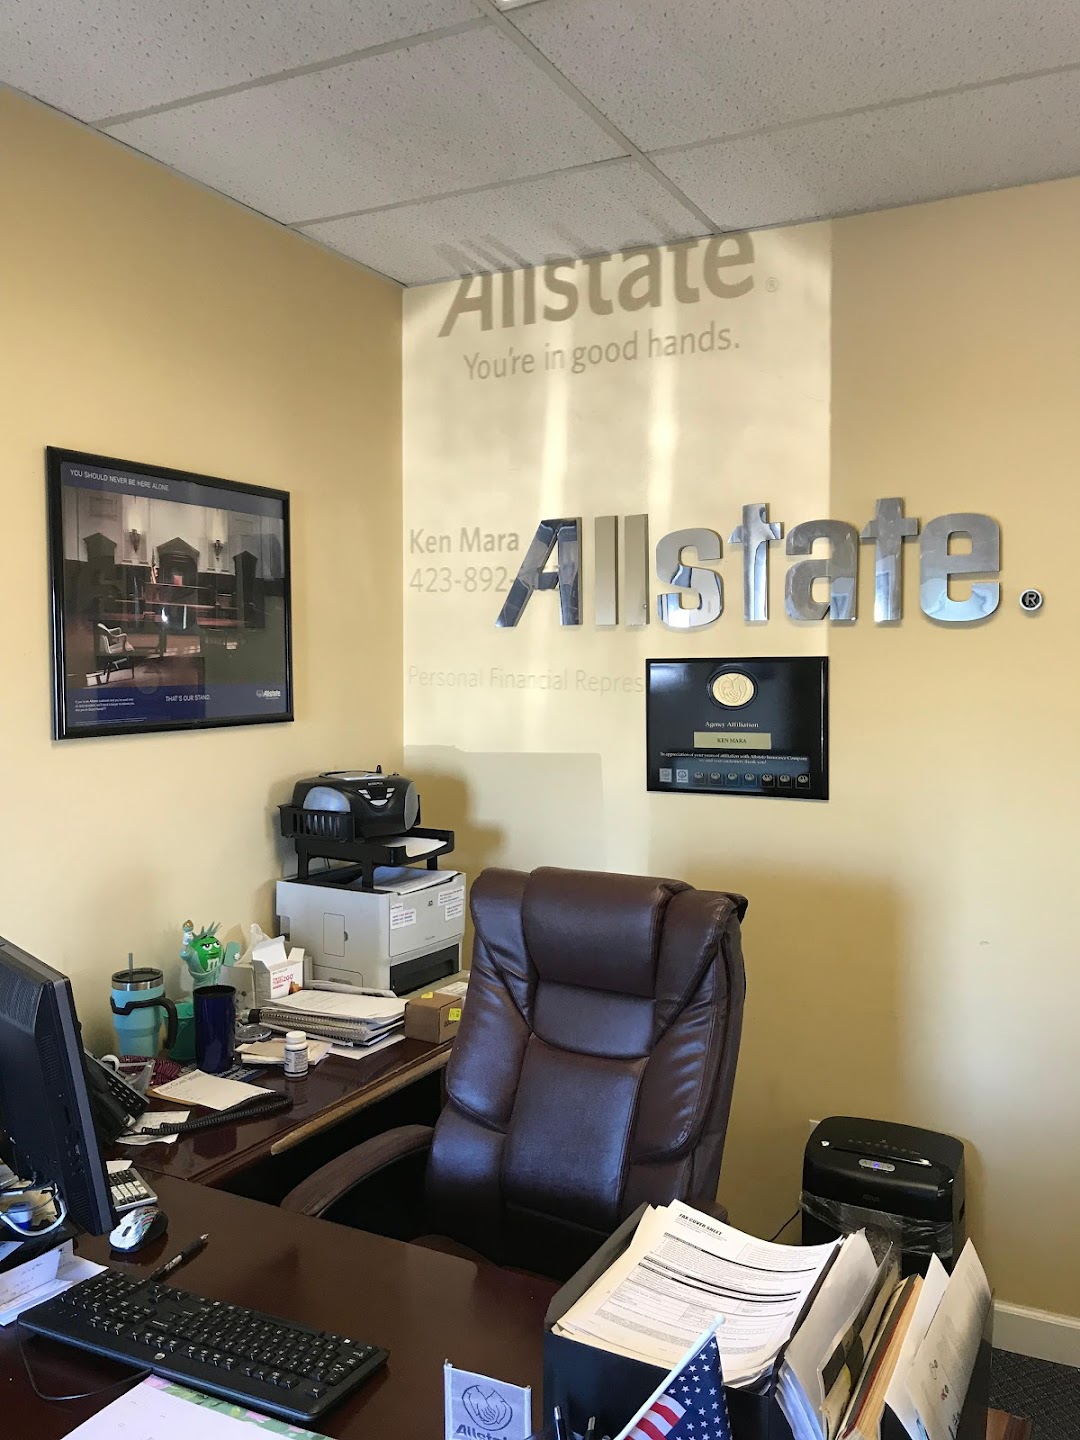 Ken Mara Allstate Insurance